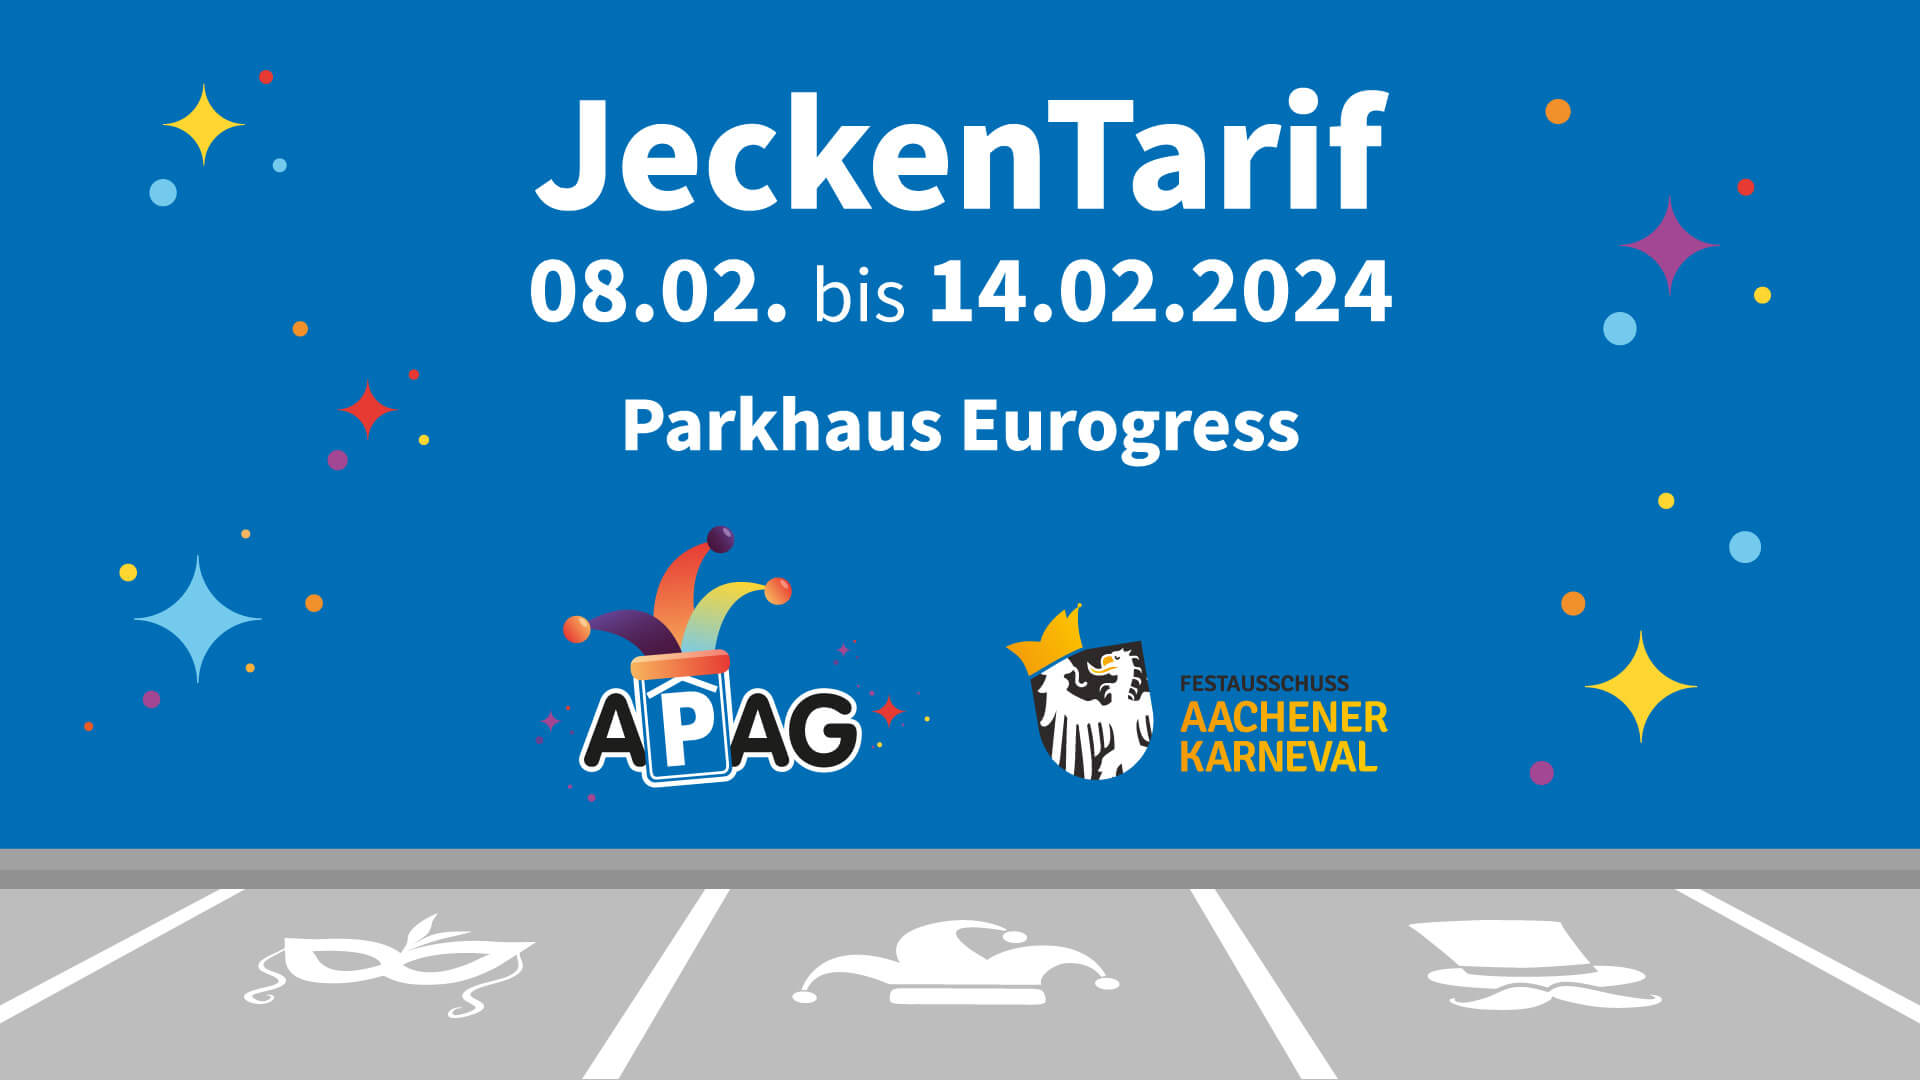 JeckenTarif in der Zeit vom 08.bis 14.02.2024 im APAG Parkhaus Eurogress